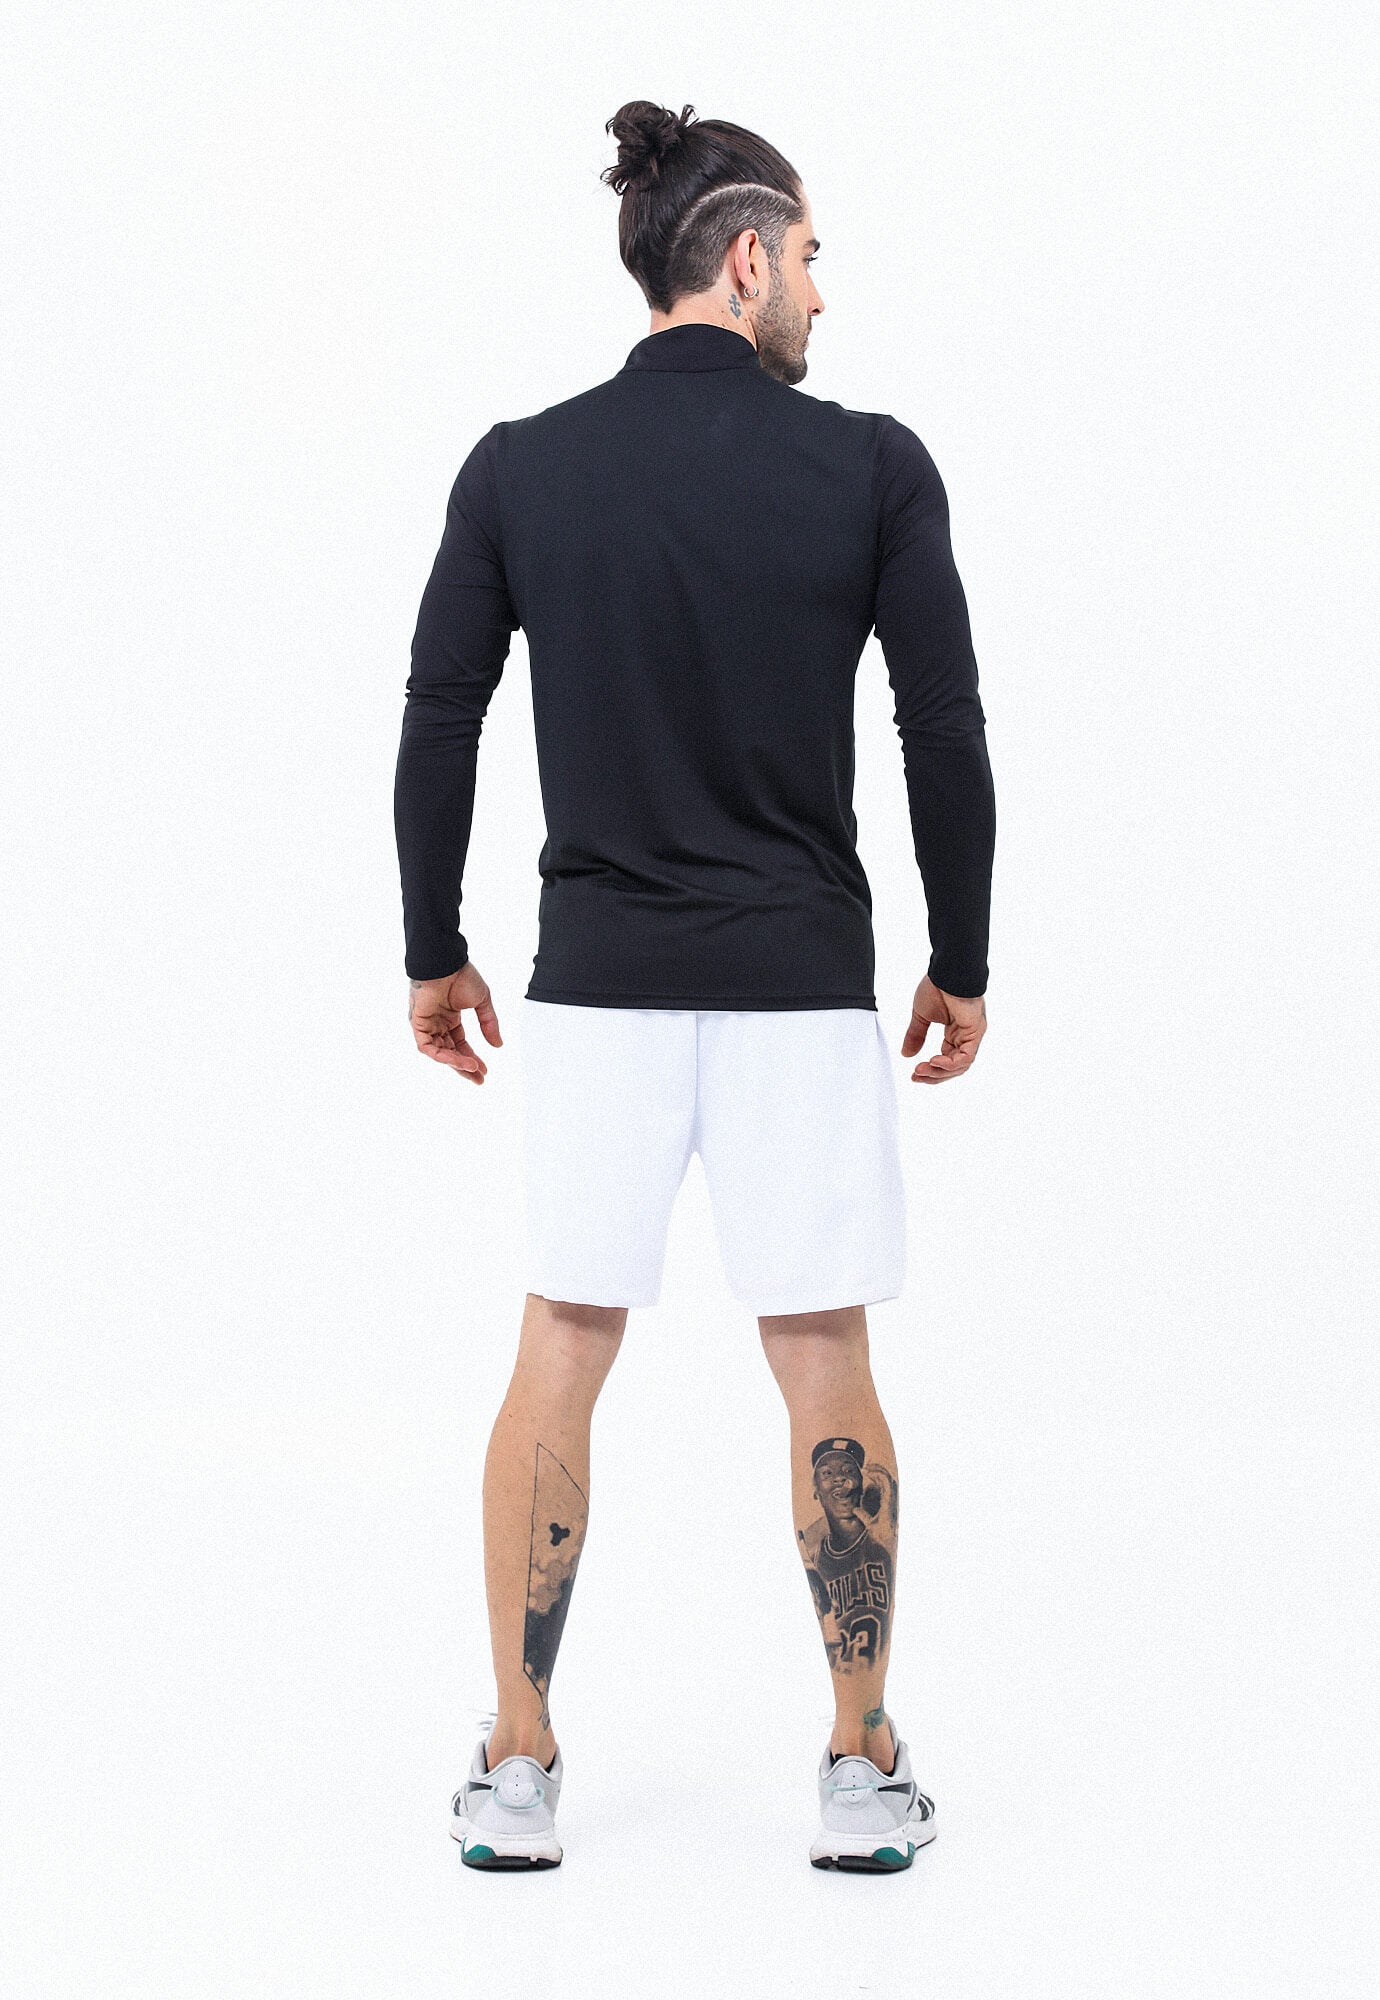 Camiseta deportiva negra con bloques en contraste en mangas, manga larga y cuello redondo para hombre